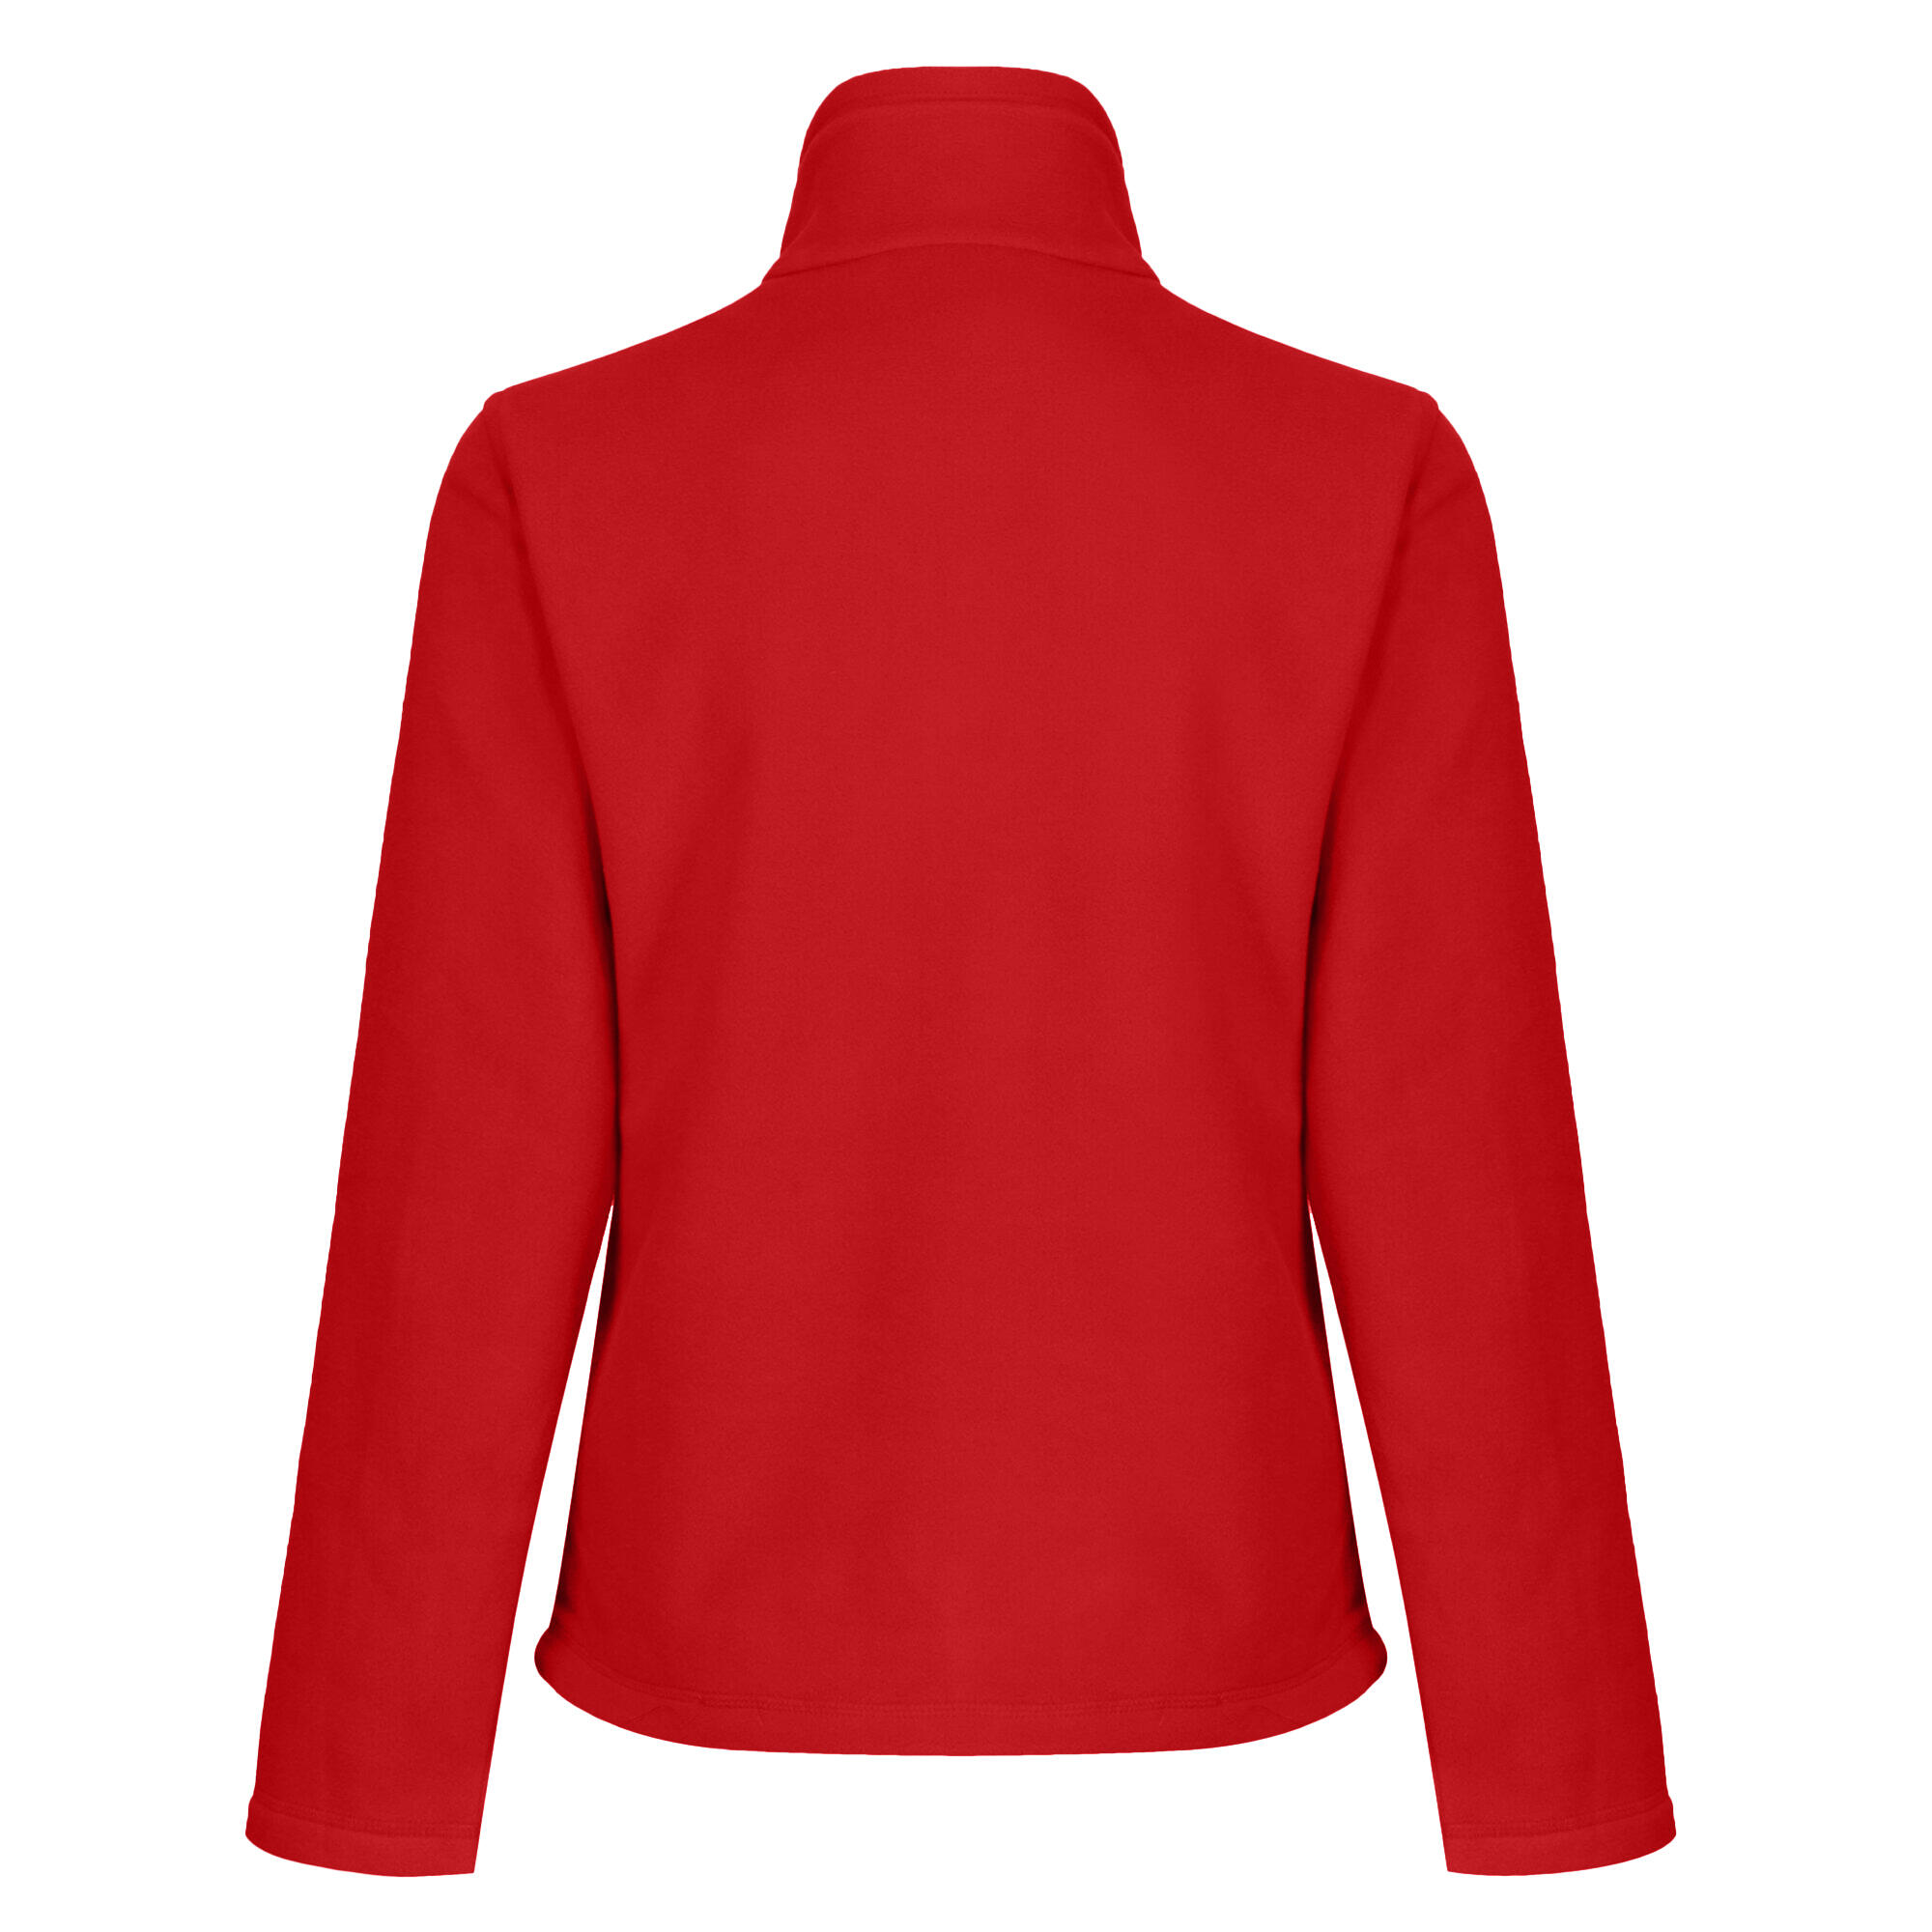 Womens/Ladies FullZip 210 Series Microfleece Jacket (Classic Red) 2/4